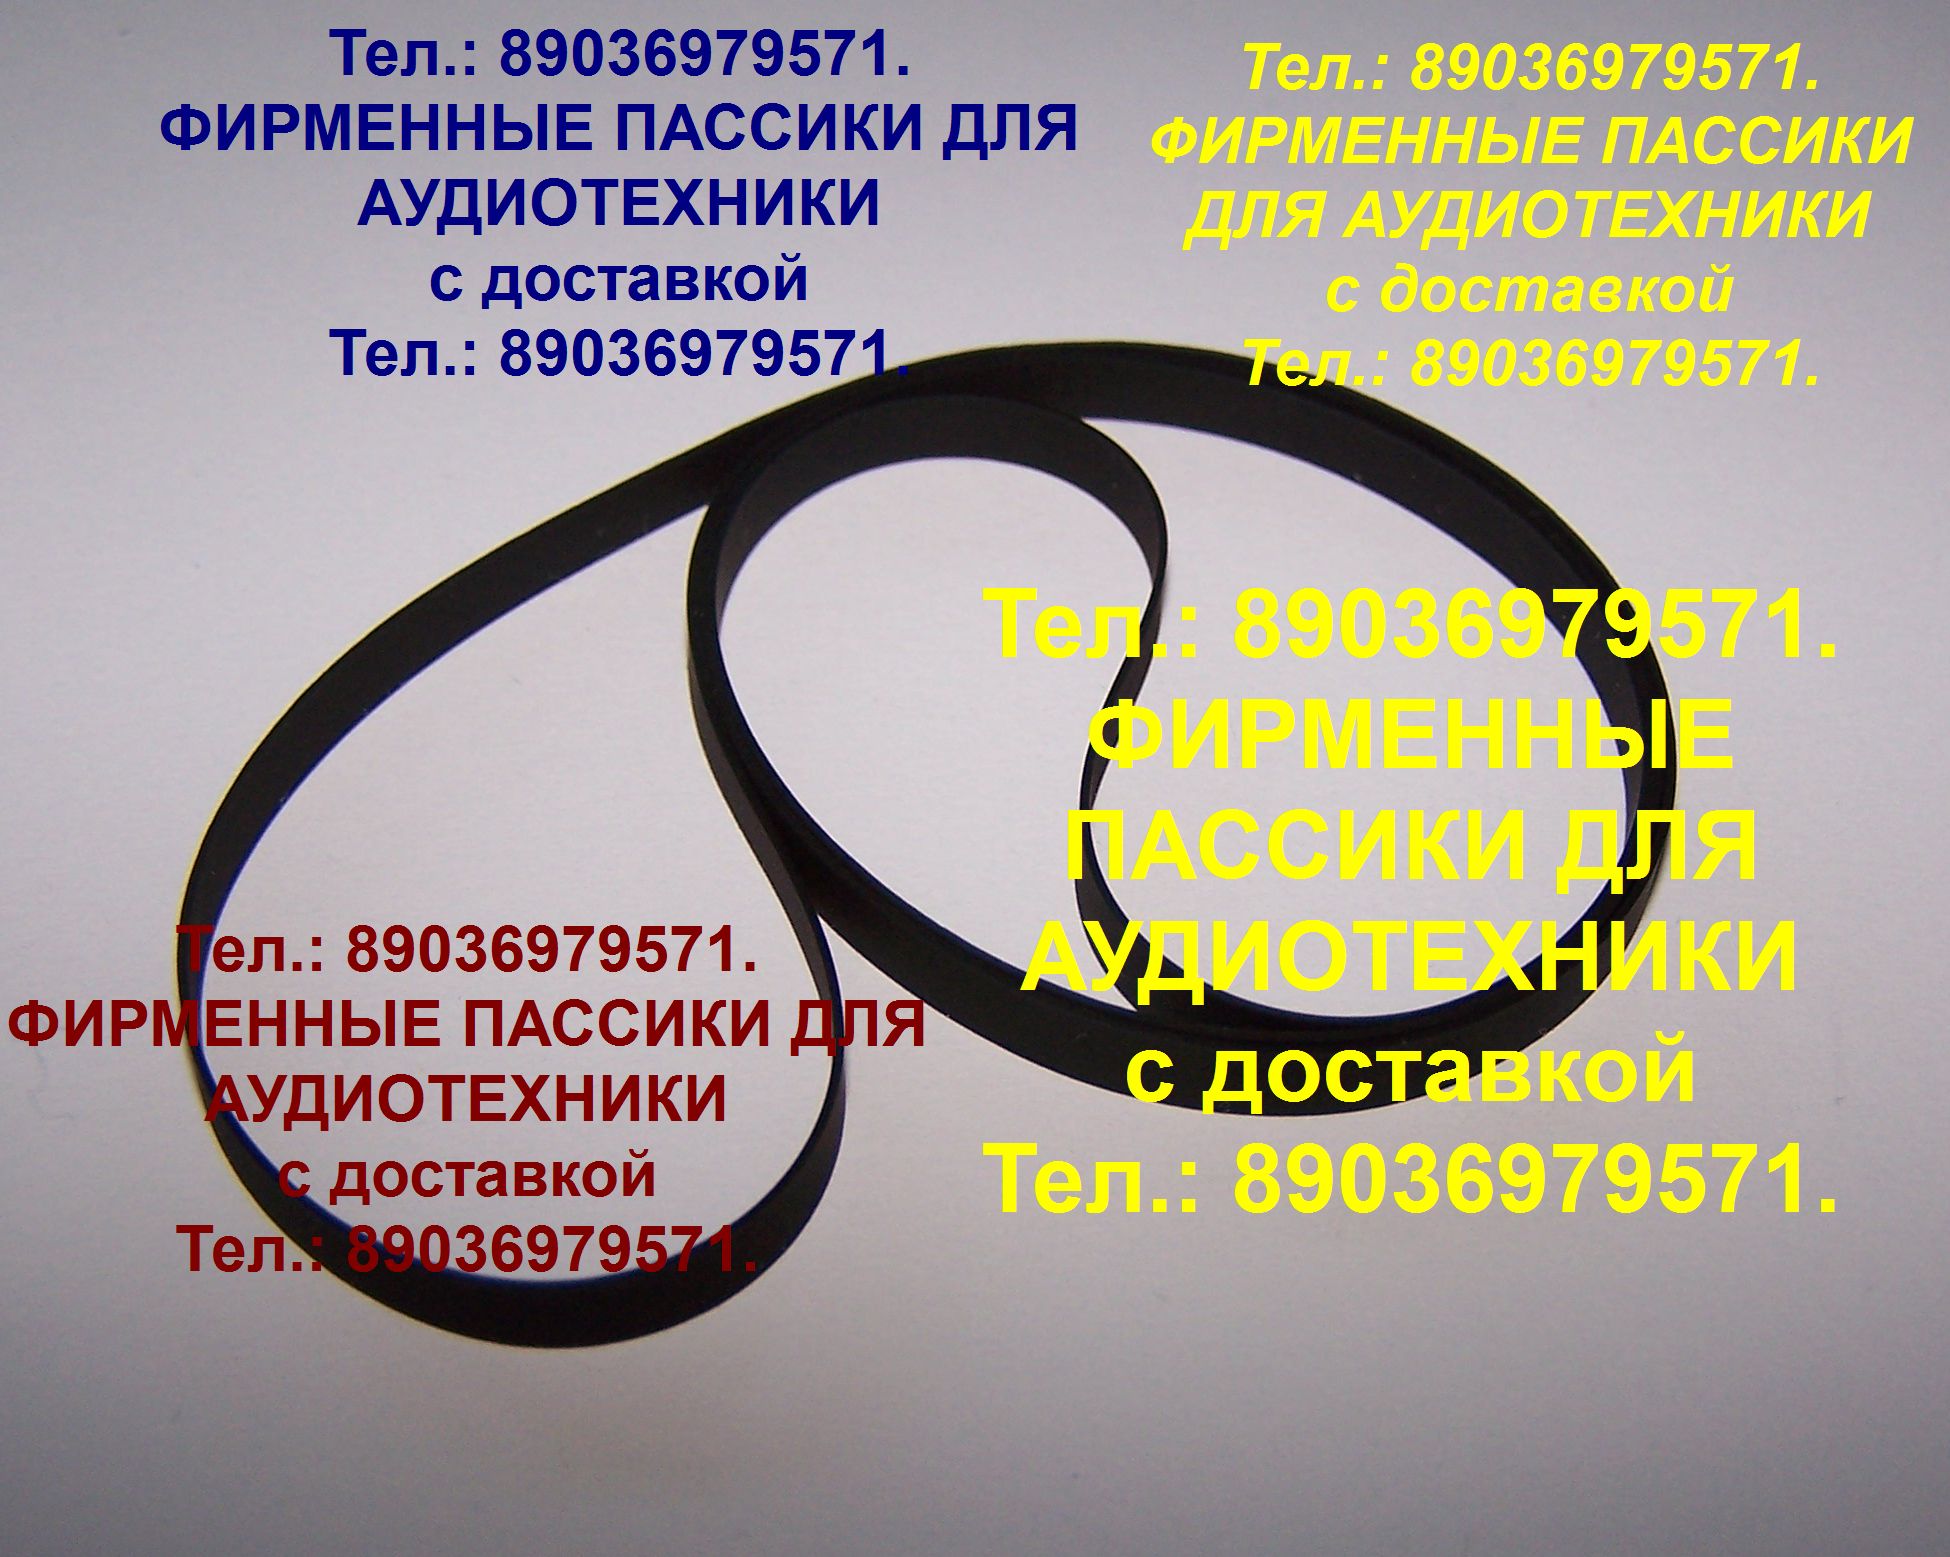 Пассик пассики для Pioneer PL-335 PL-225 PL-J210 PL-J500 Пассик пассики для Pioneer PL-335 PL-225 PL-J210 PL-J500  в городе Москва, фото 1, телефон продавца: +7 (903) 697-95-71